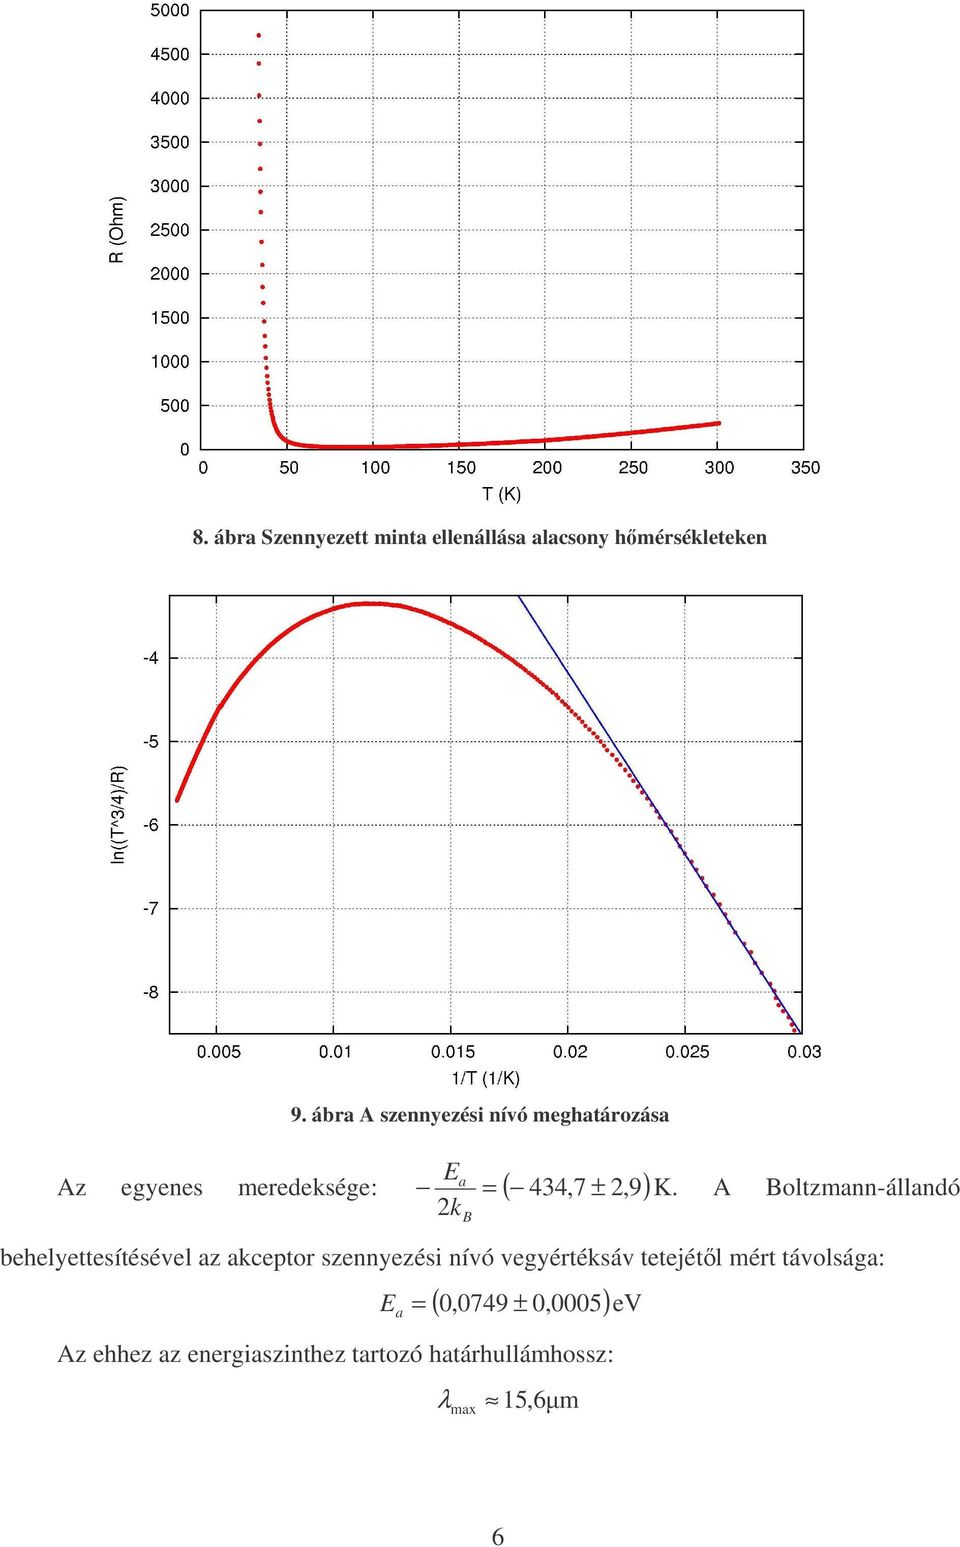 A Boltzmann-állandó behelyettesítésével az akceptor szennyezési nívó vegyértéksáv